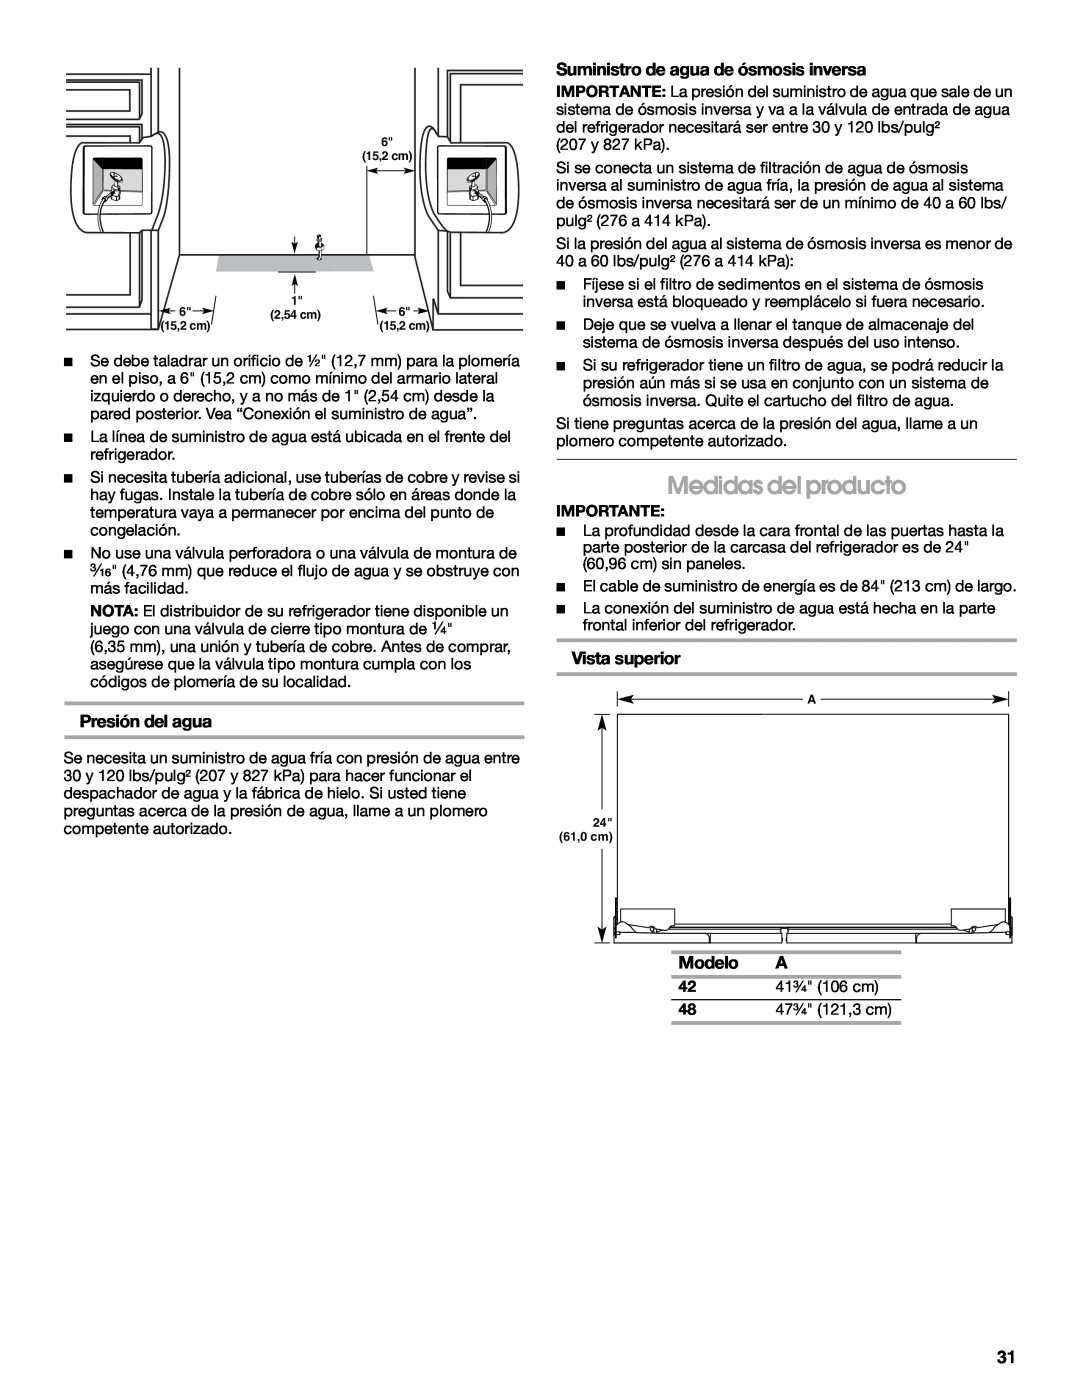 Jenn-Air W10379136B manual Medidas del producto, Suministro de agua de ósmosis inversa, Vista superior, Presión del agua 